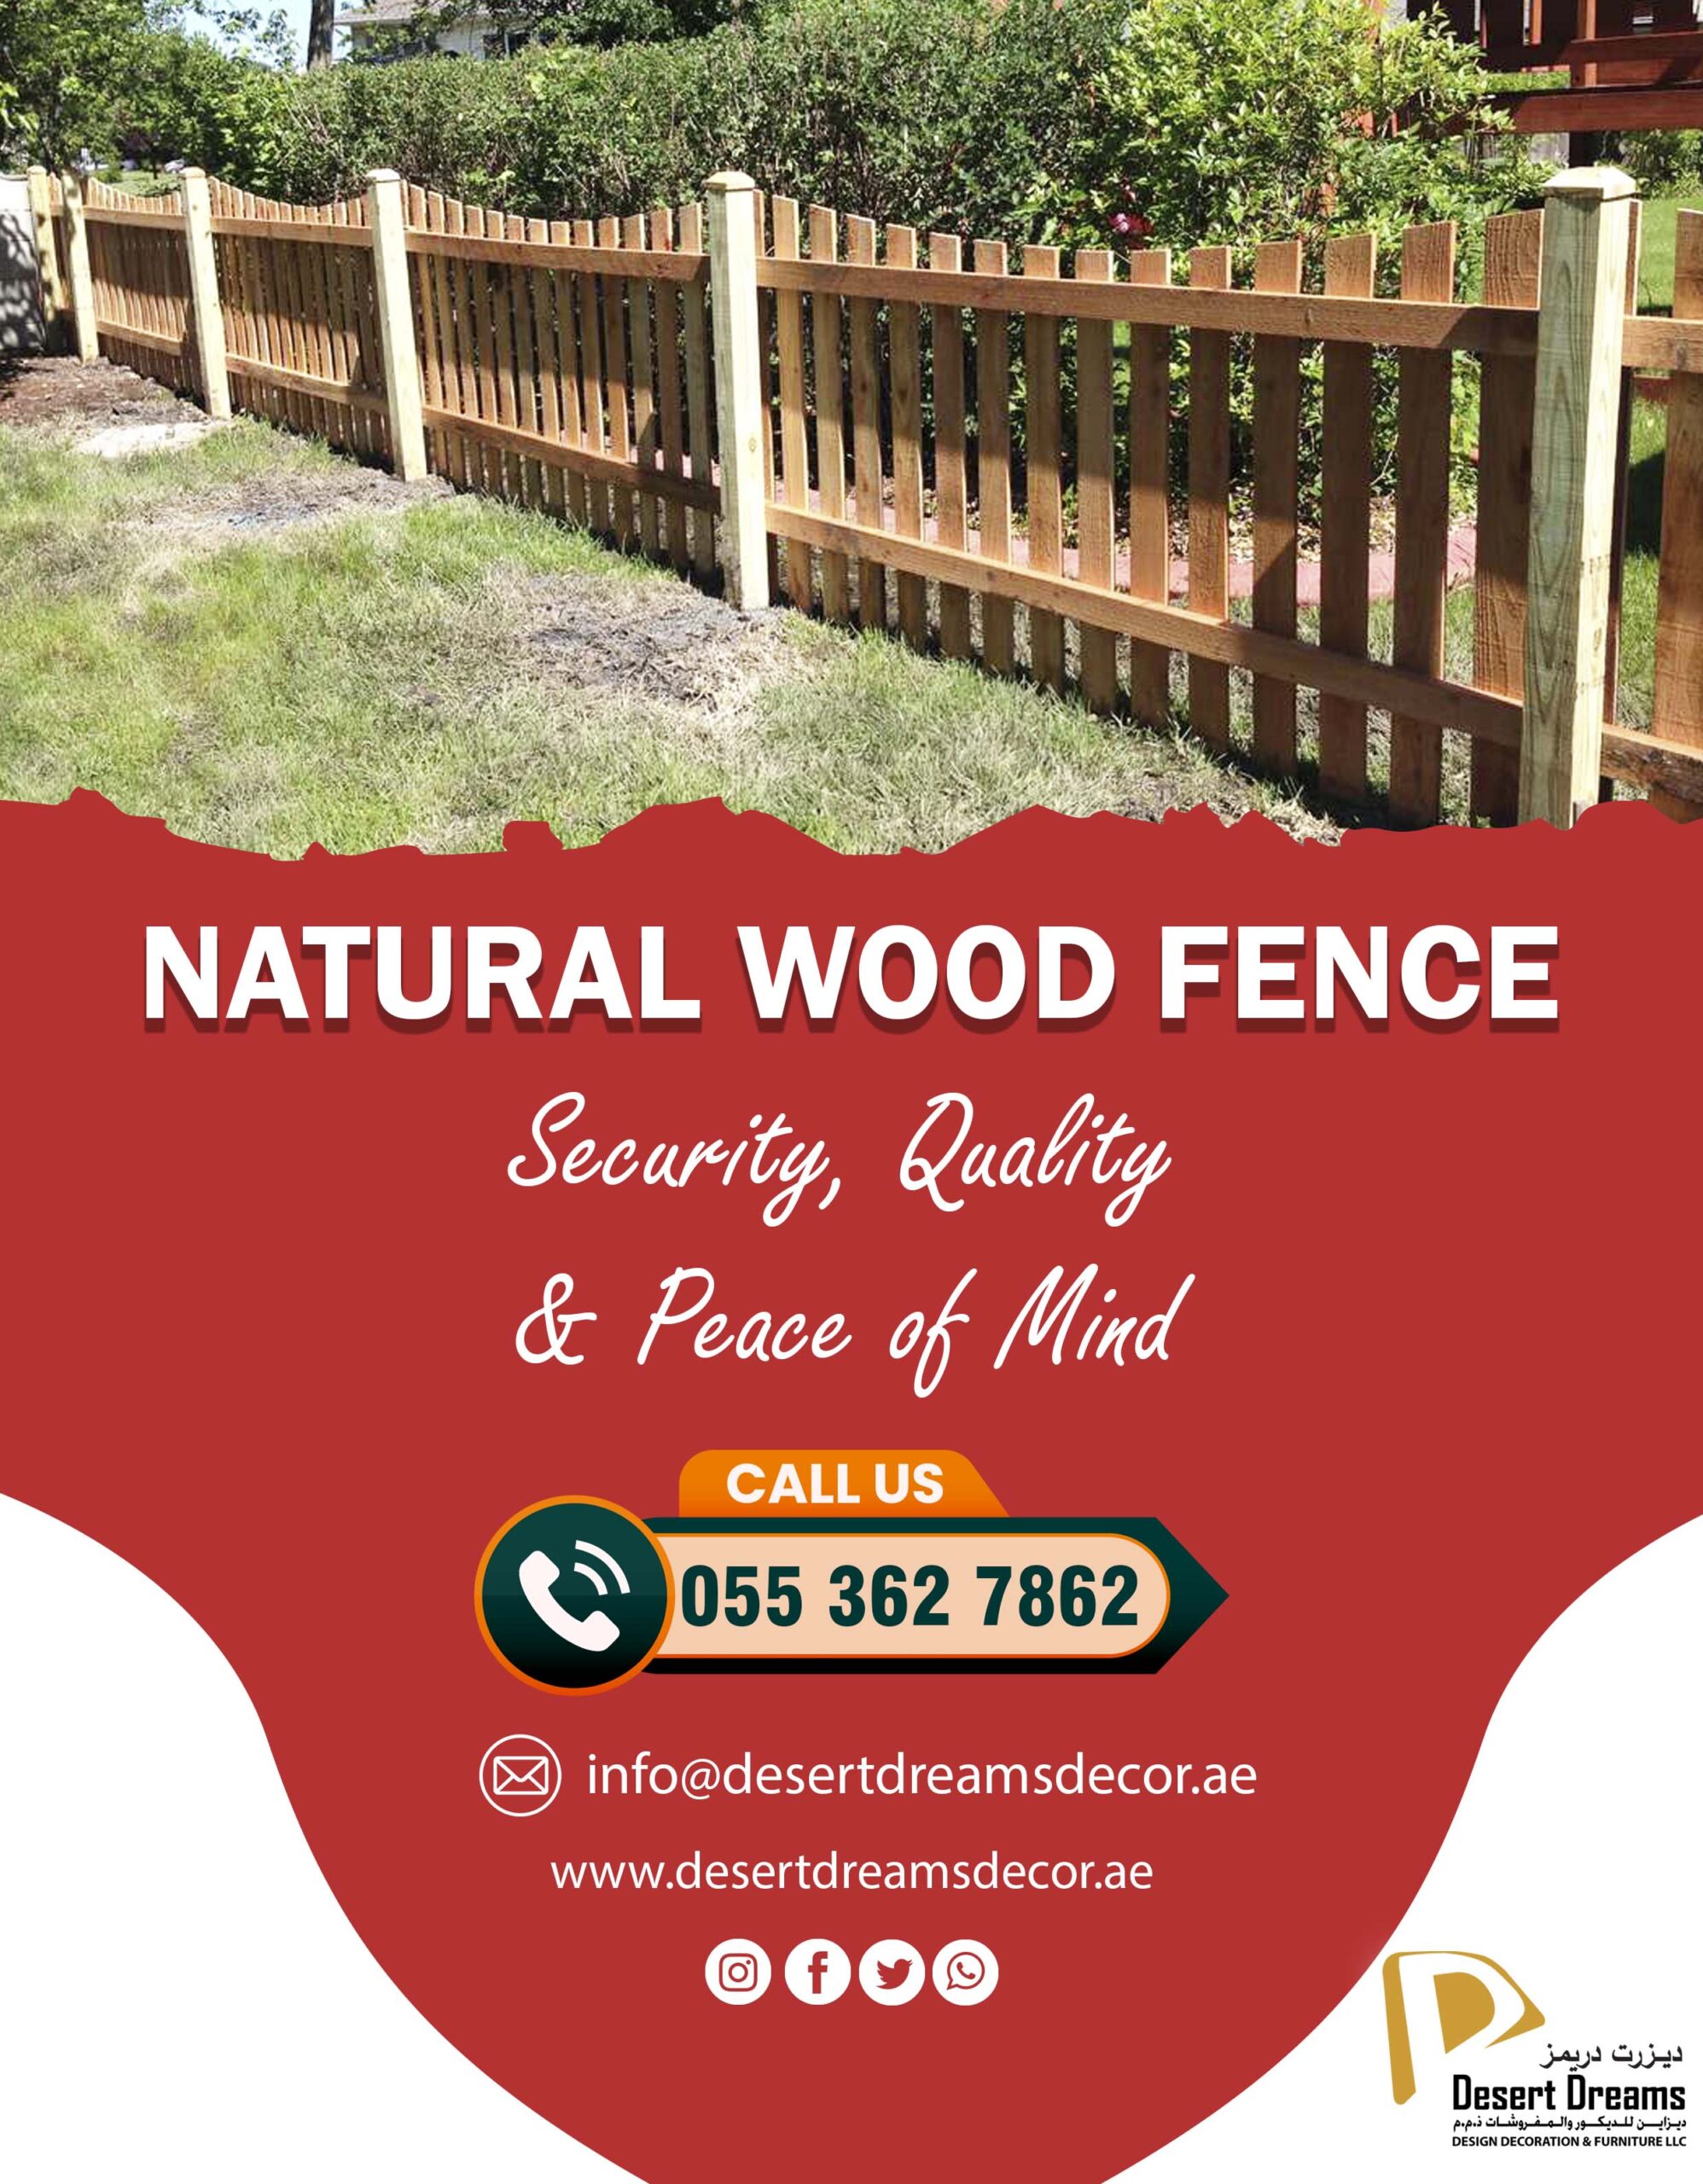 Wooden Slatted Fence Uae_White Picket Fence Uae_Natural Wood Fence Uae (1).jpg